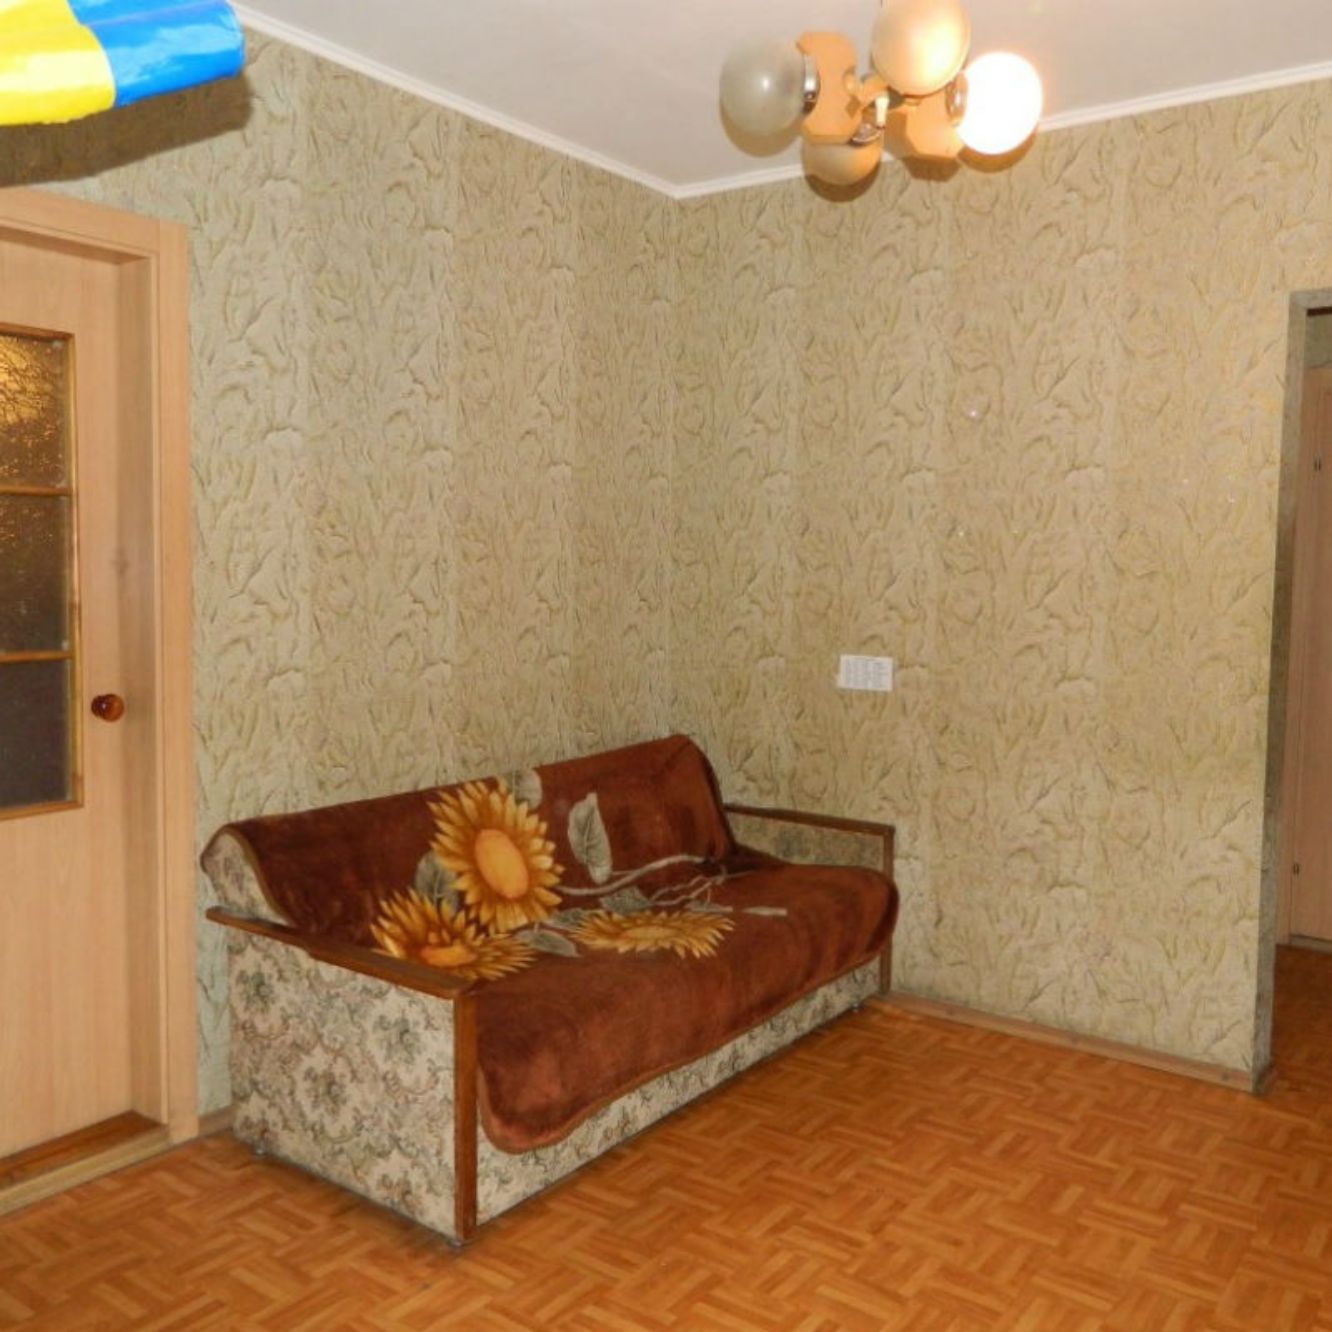 Хостел в Киеве на ул.Григоренко18-а.Холл